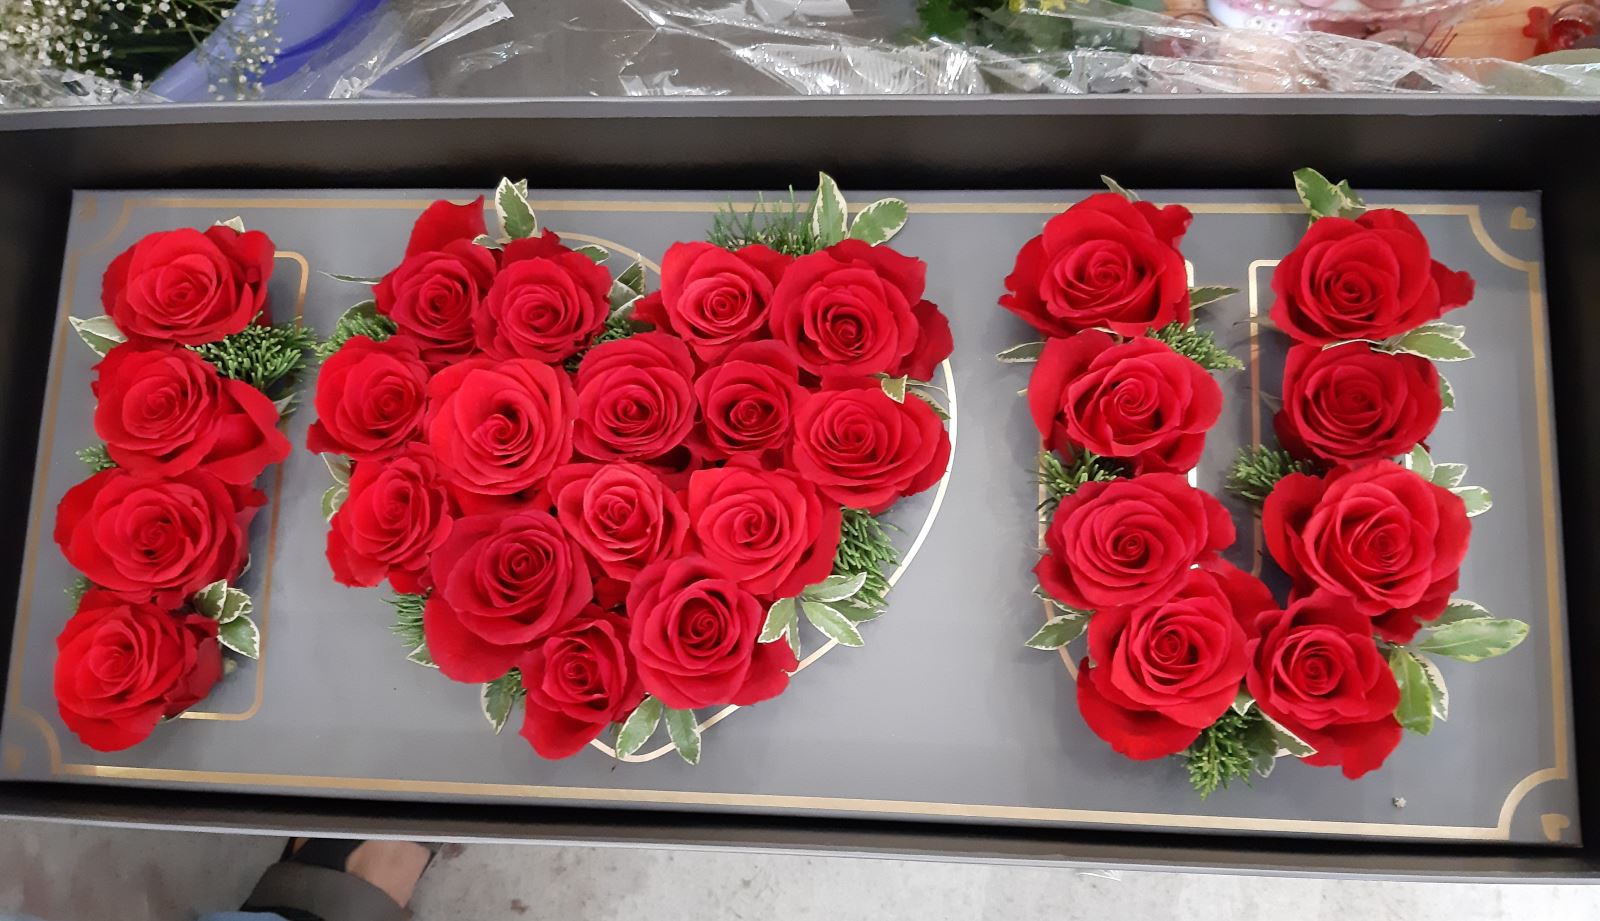 Giá hoa hồng: Bức hình này sẽ mang đến cho bạn một khung cảnh lãng mạn và ngọt ngào với cành hoa hồng đỏ tươi tắn. Làm cho trái tim bạn tan chảy khi nhìn thấy giá trị và độ quý giá của những bông hoa đẹp này. Đến và tận hưởng bức hình này ngay bây giờ!